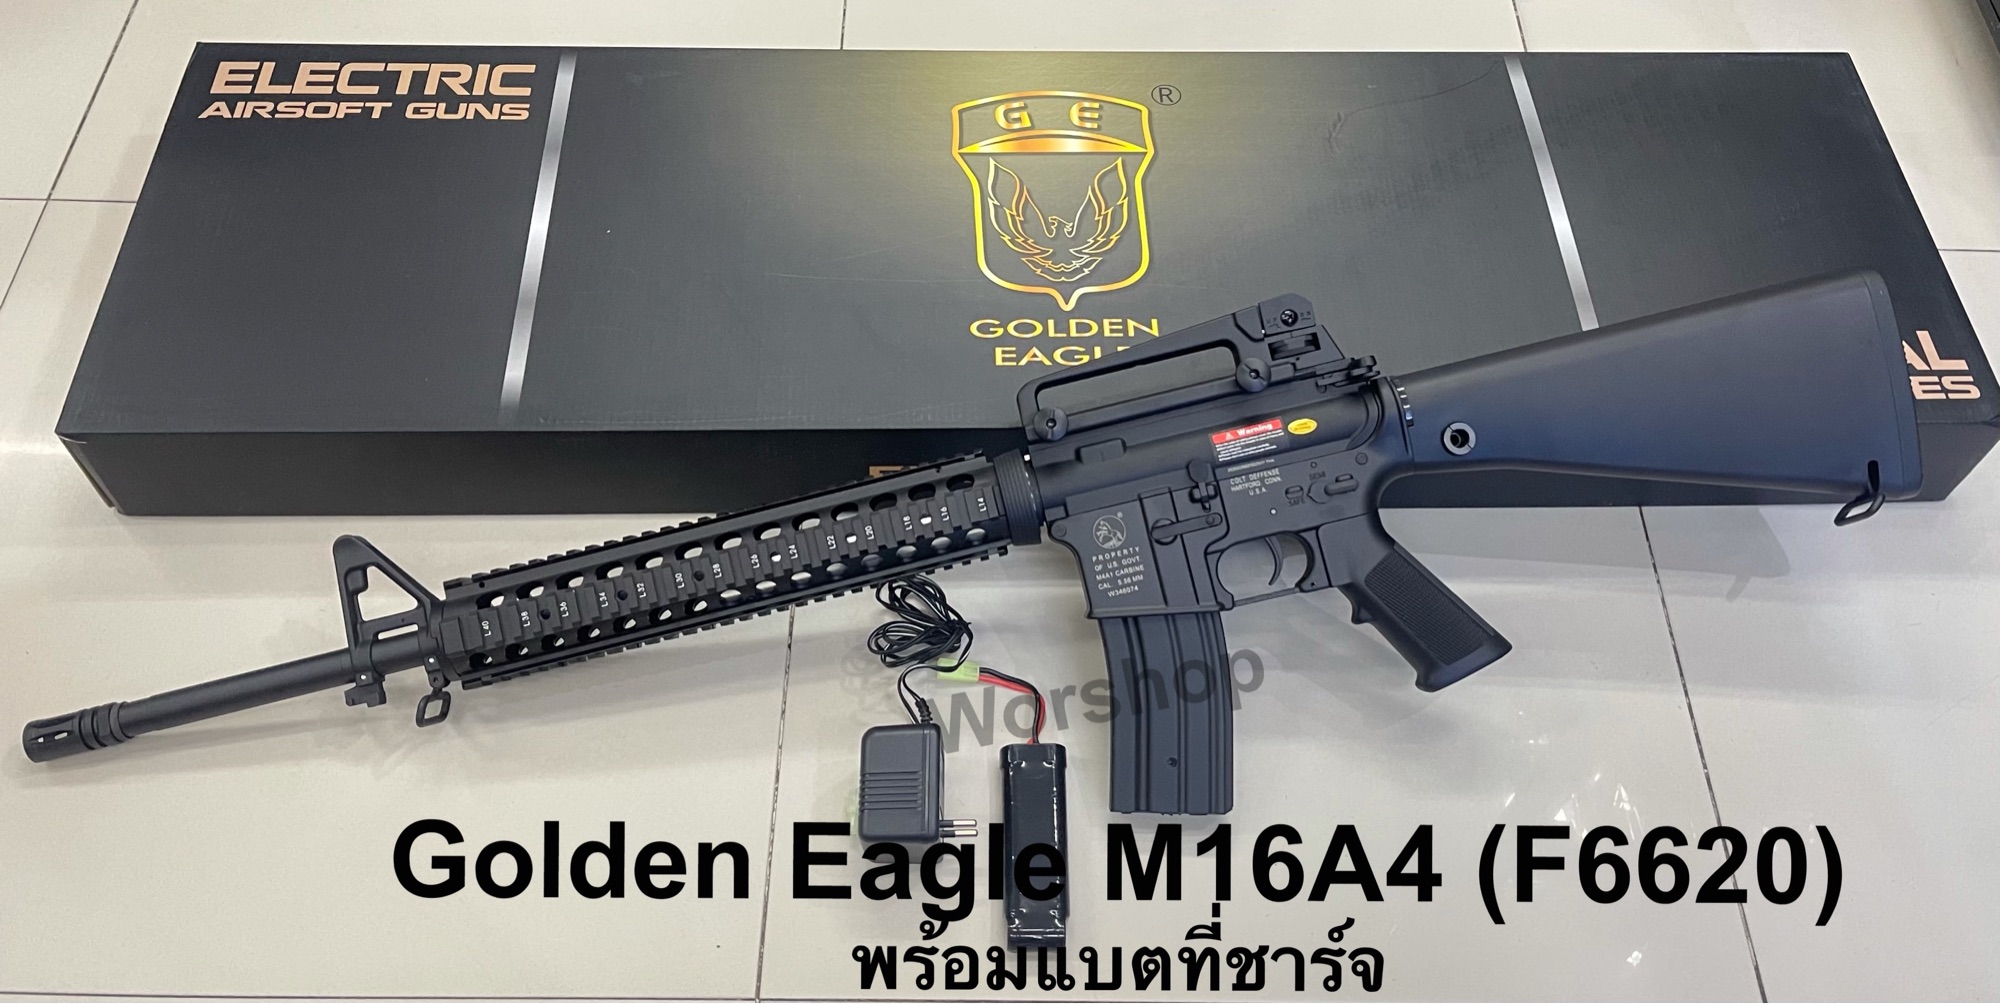 ปืนบีบีกัน รุ่น M16A4 (F6620)บอดี้ ABS ค่าย Golden Eagle พร้อมแบตเตอรี่ที่ชาร์จ มือ1